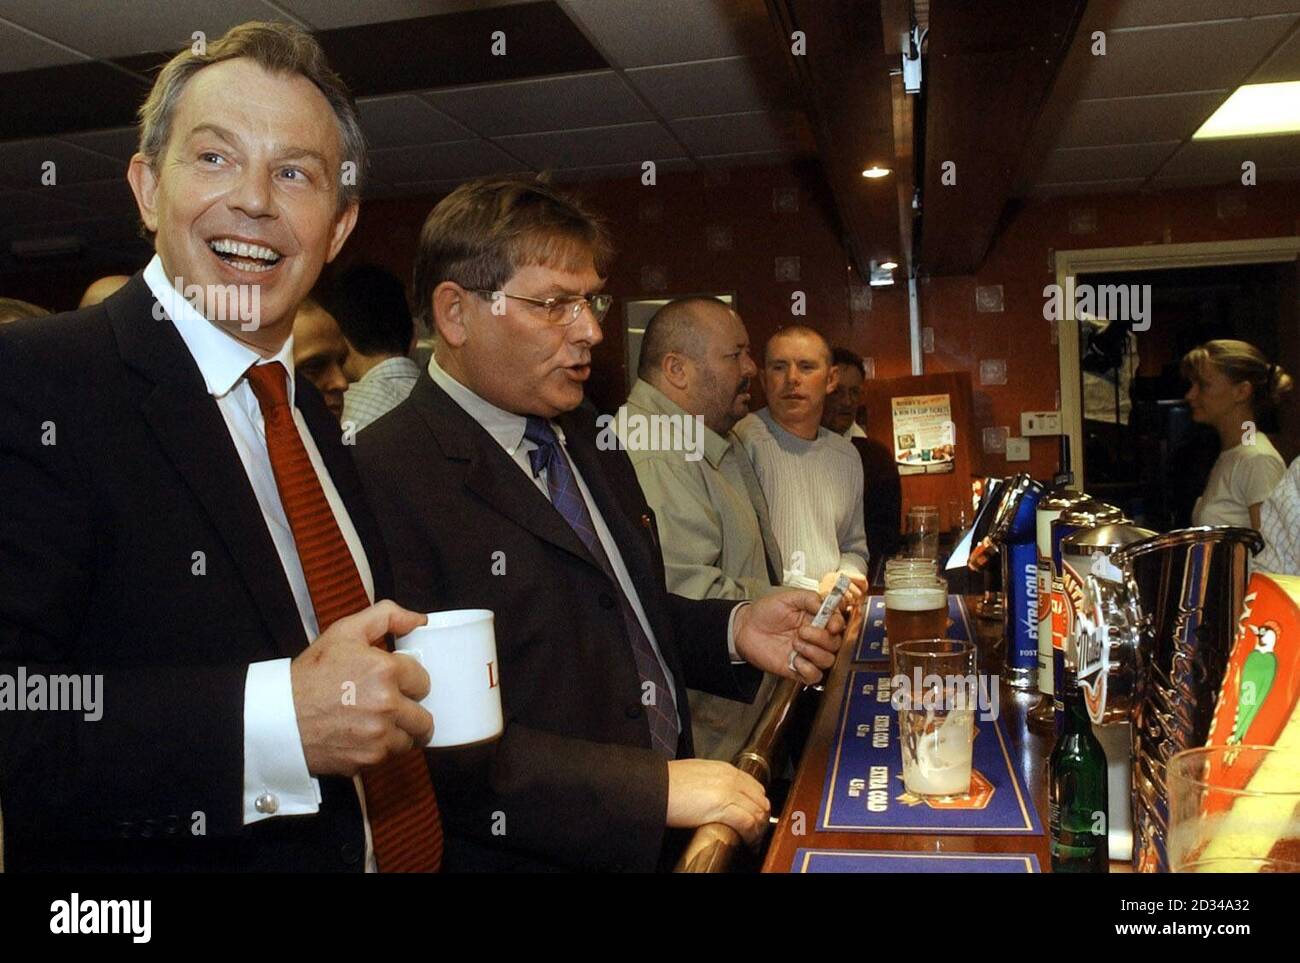 Il primo ministro Tony Blair ha una tazza di tè dopo aver pronunciato il suo discorso di accettazione nella sua circoscrizione elettorale di Sedgefield, dopo essere stato eletto candidato alle prossime elezioni generali. Foto Stock